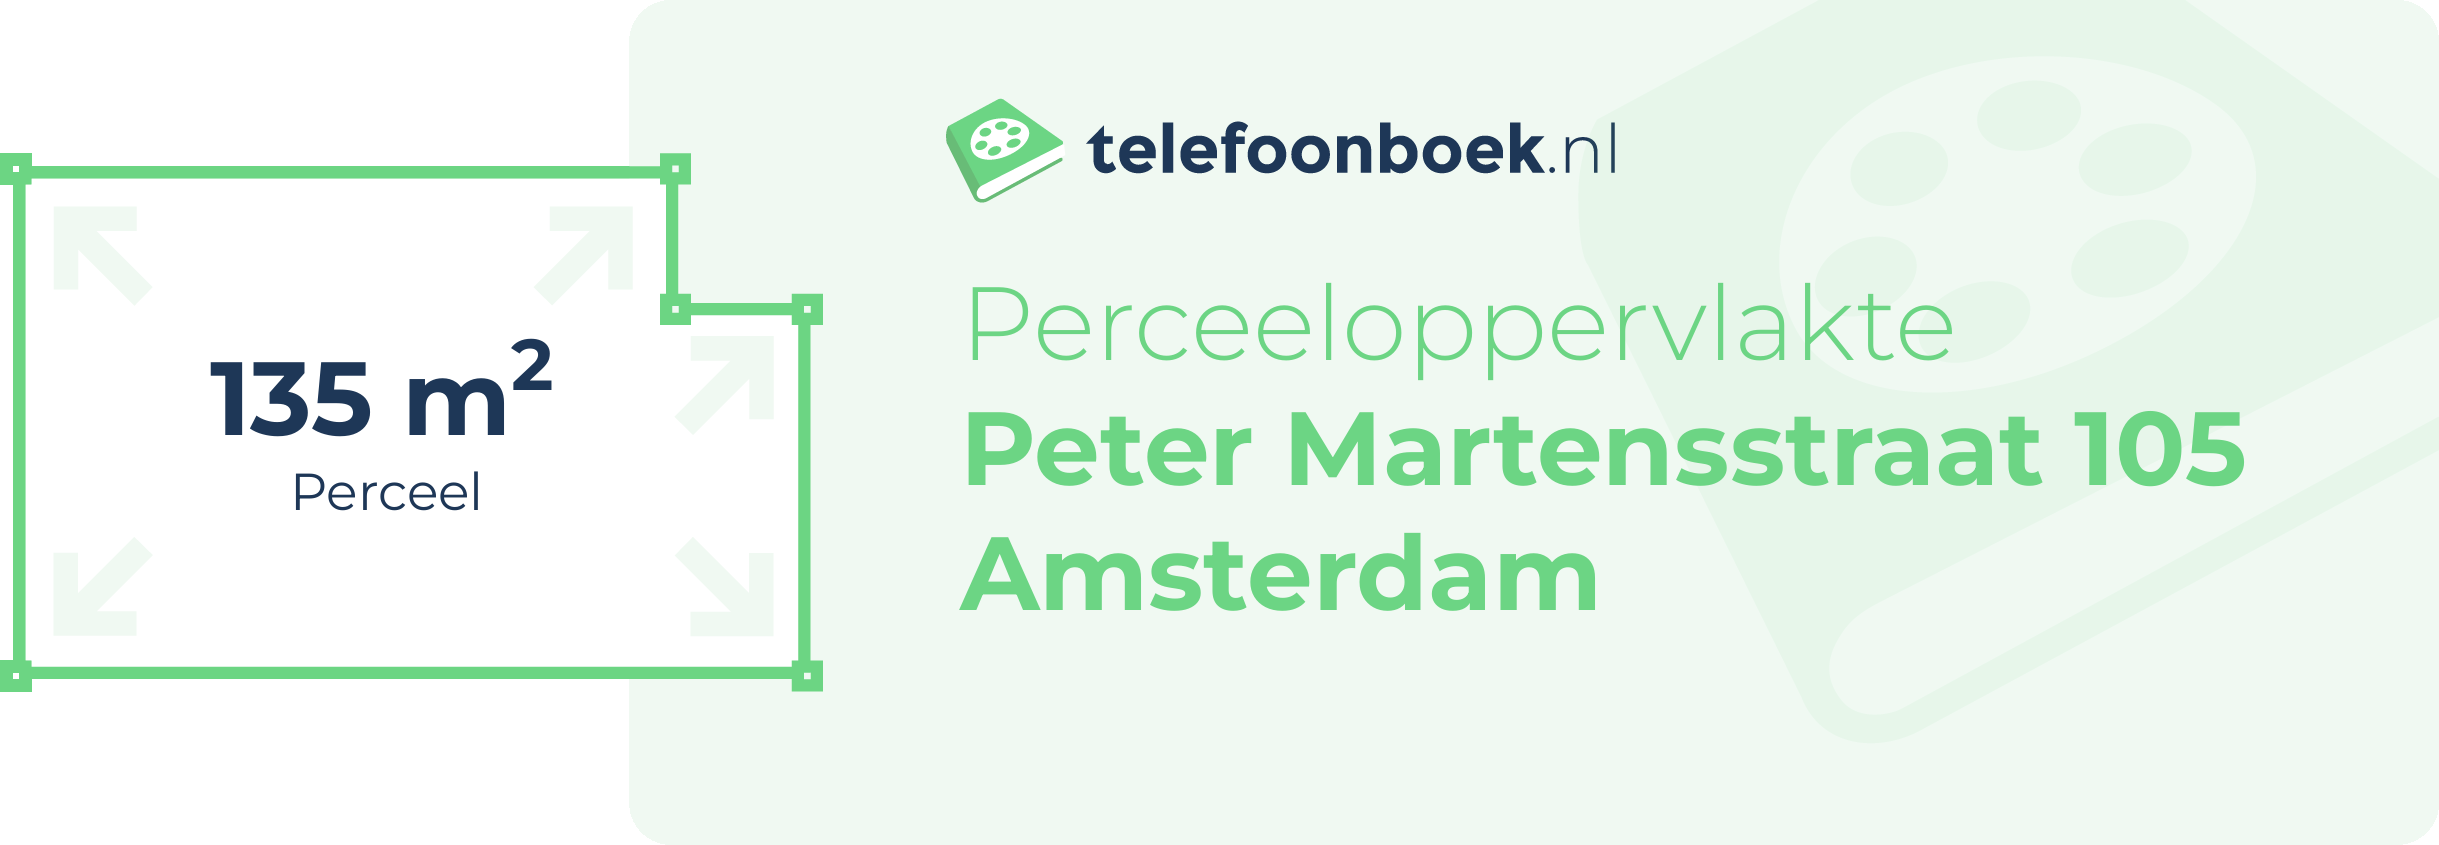 Perceeloppervlakte Peter Martensstraat 105 Amsterdam